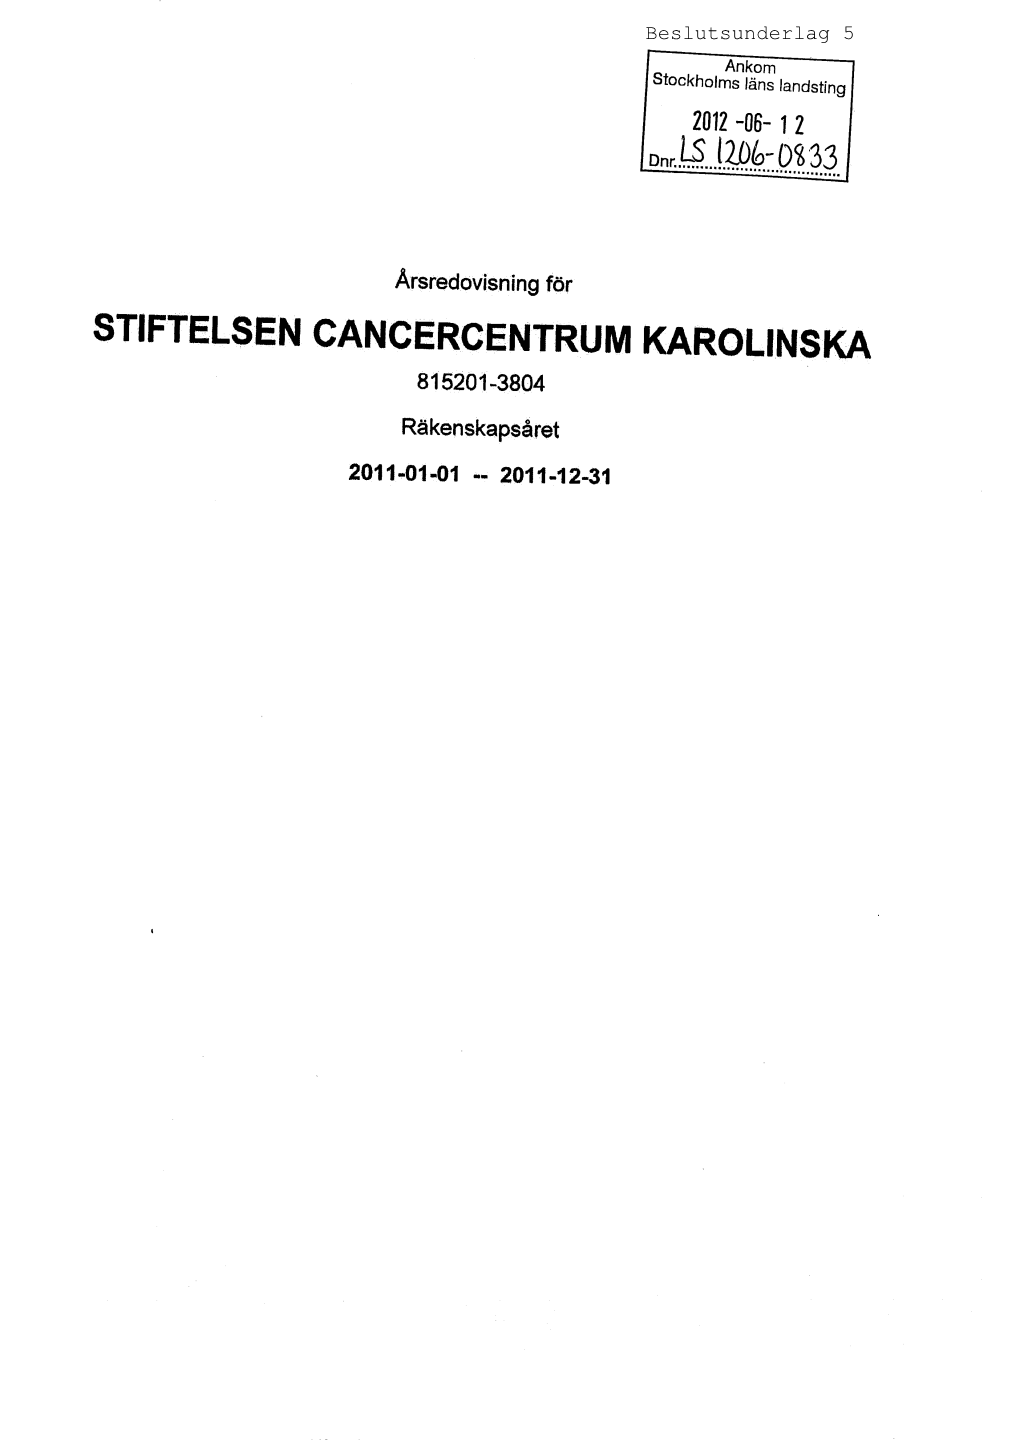 Stiftelsen Cancercentrum Karolinska 815201-3804